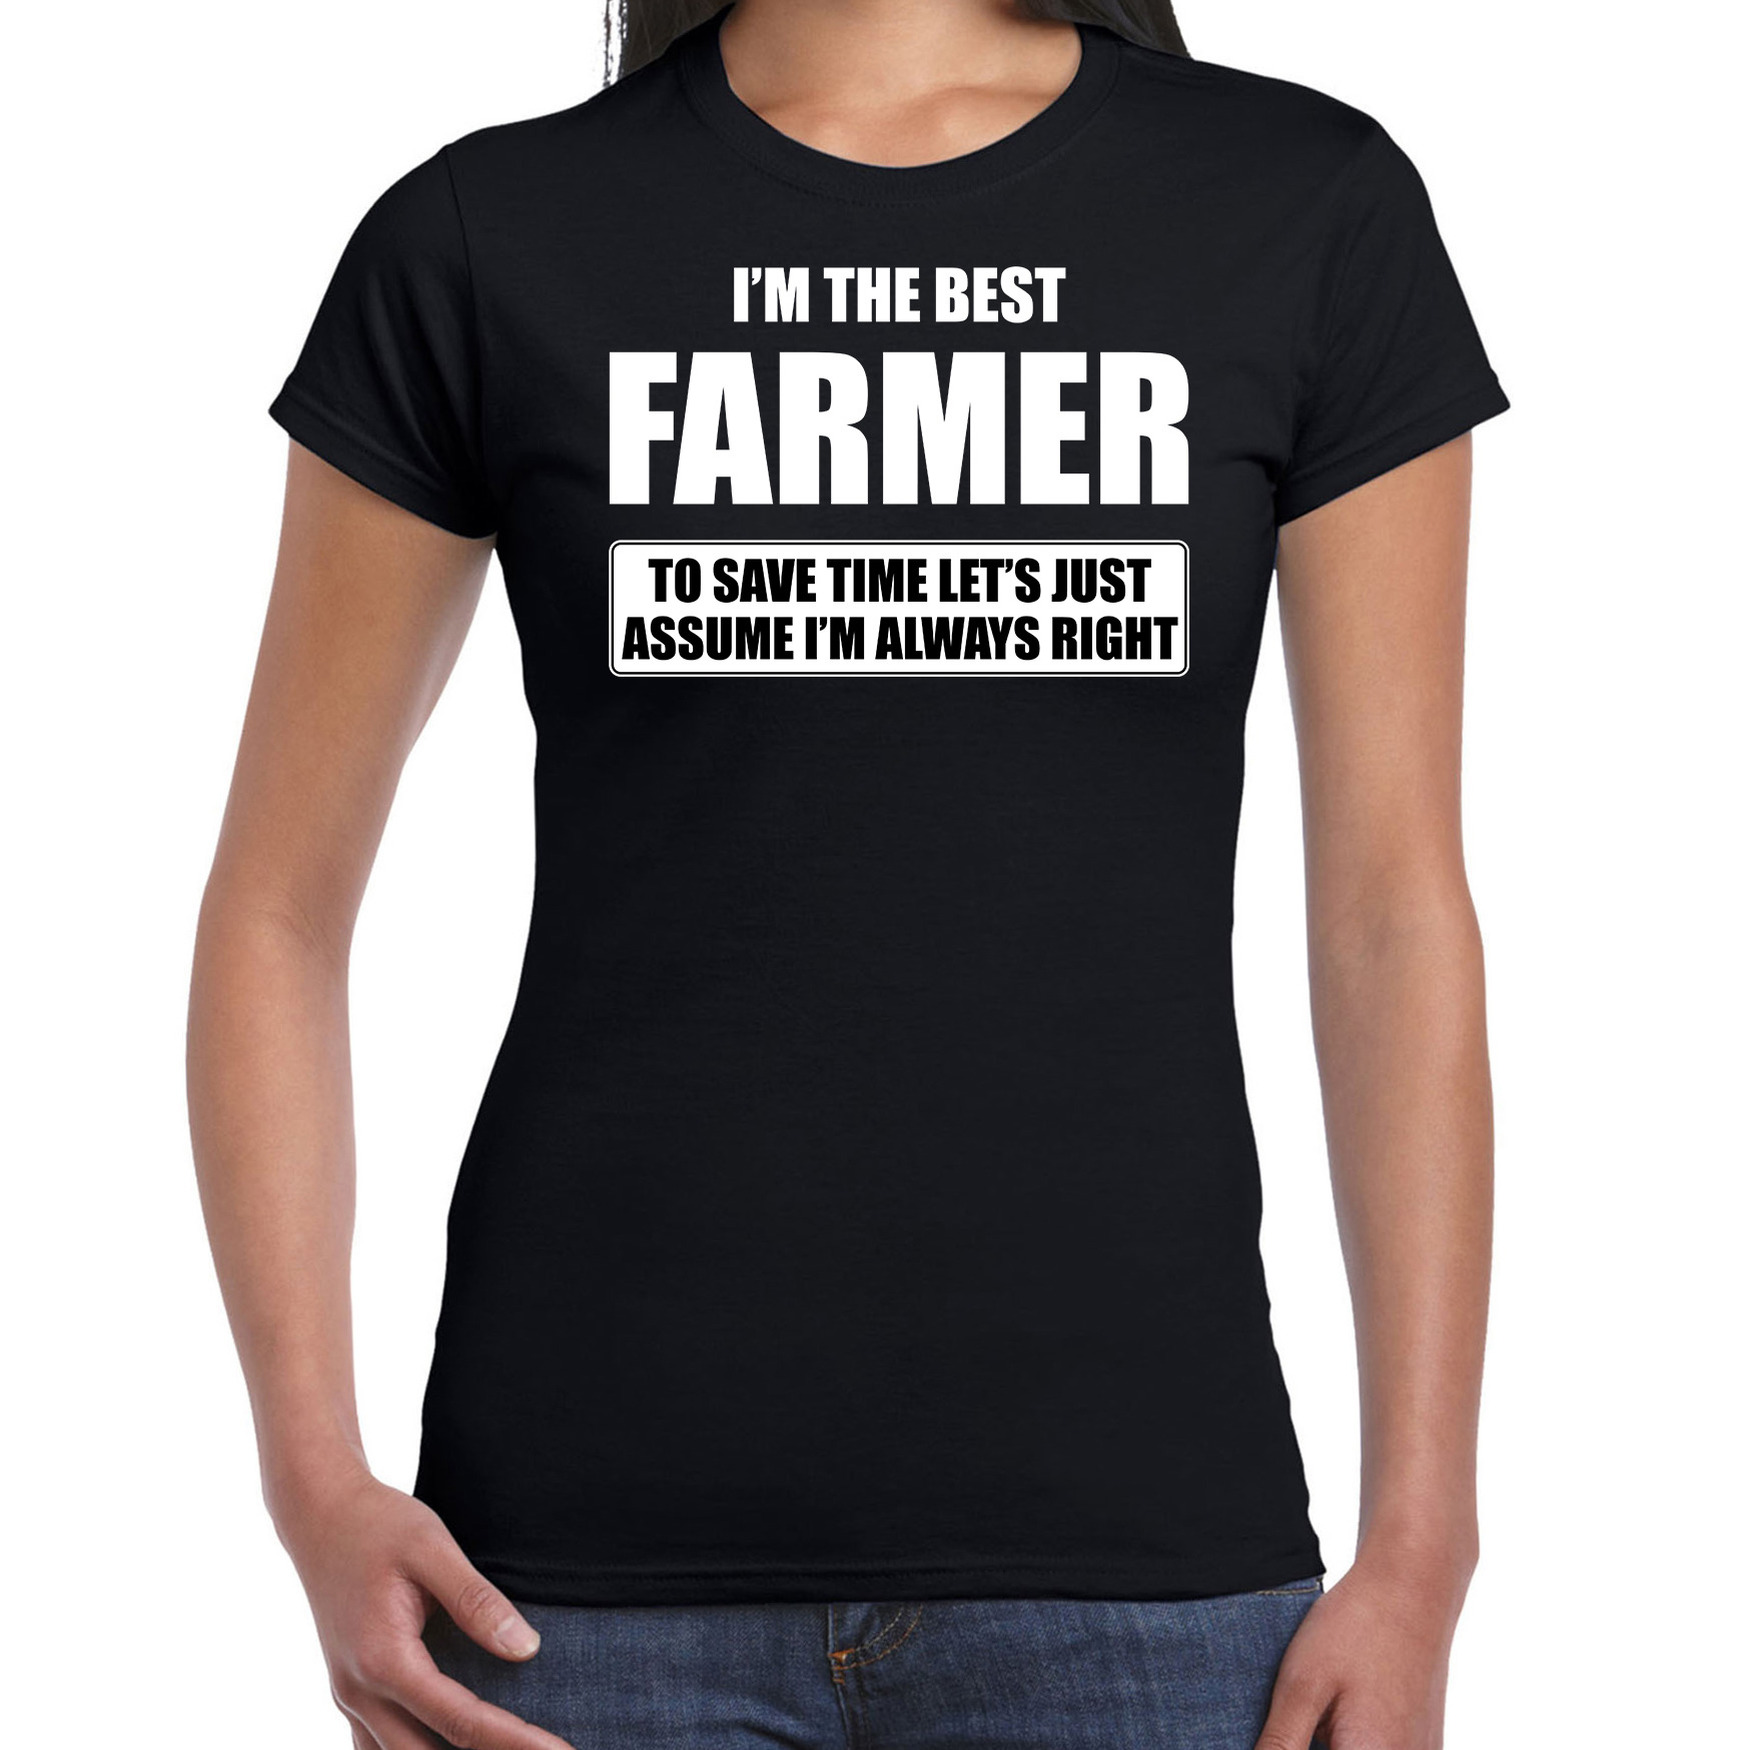 I'm the best farmer t-shirt zwart dames De beste boerin cadeau